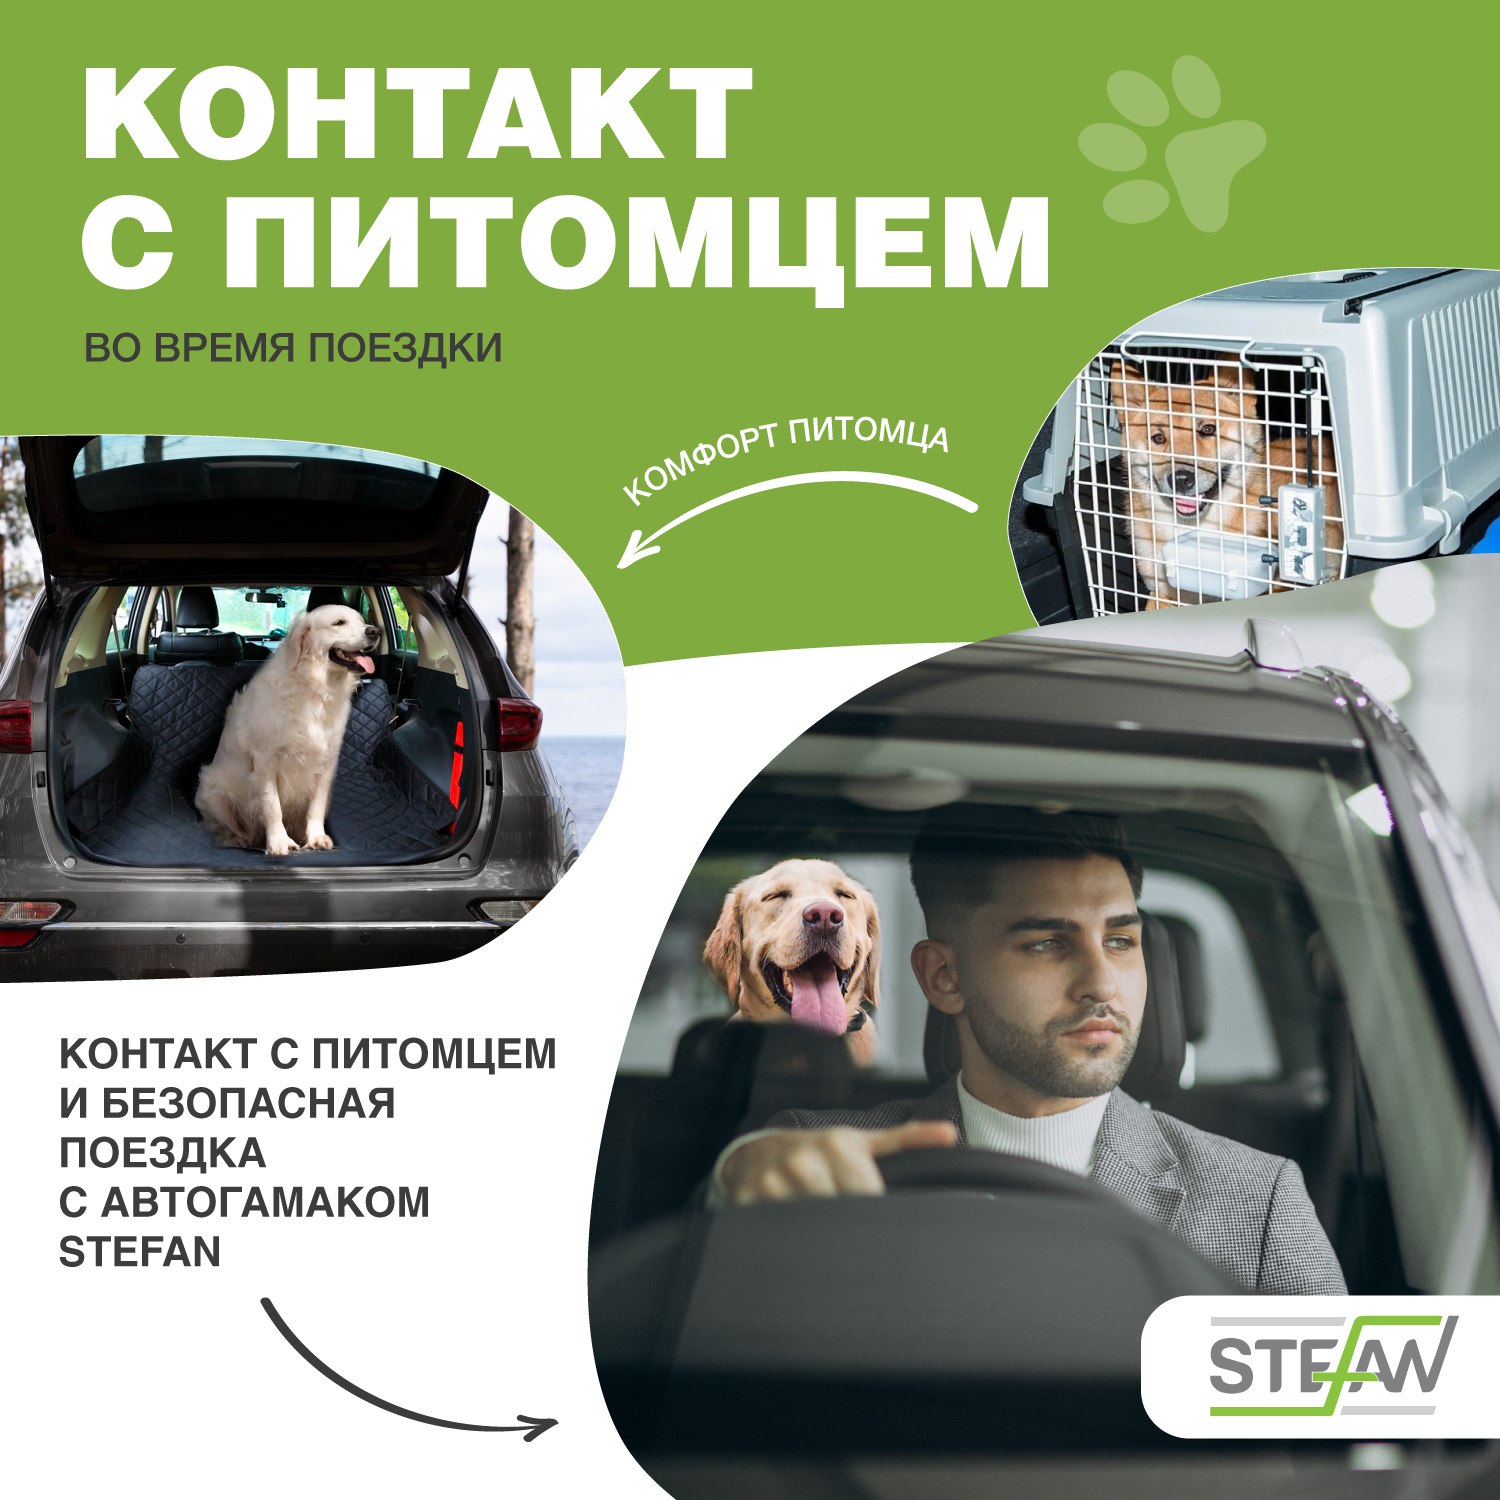 Автогамак для животных Stefan для багажника черный 135x205см - фото 6